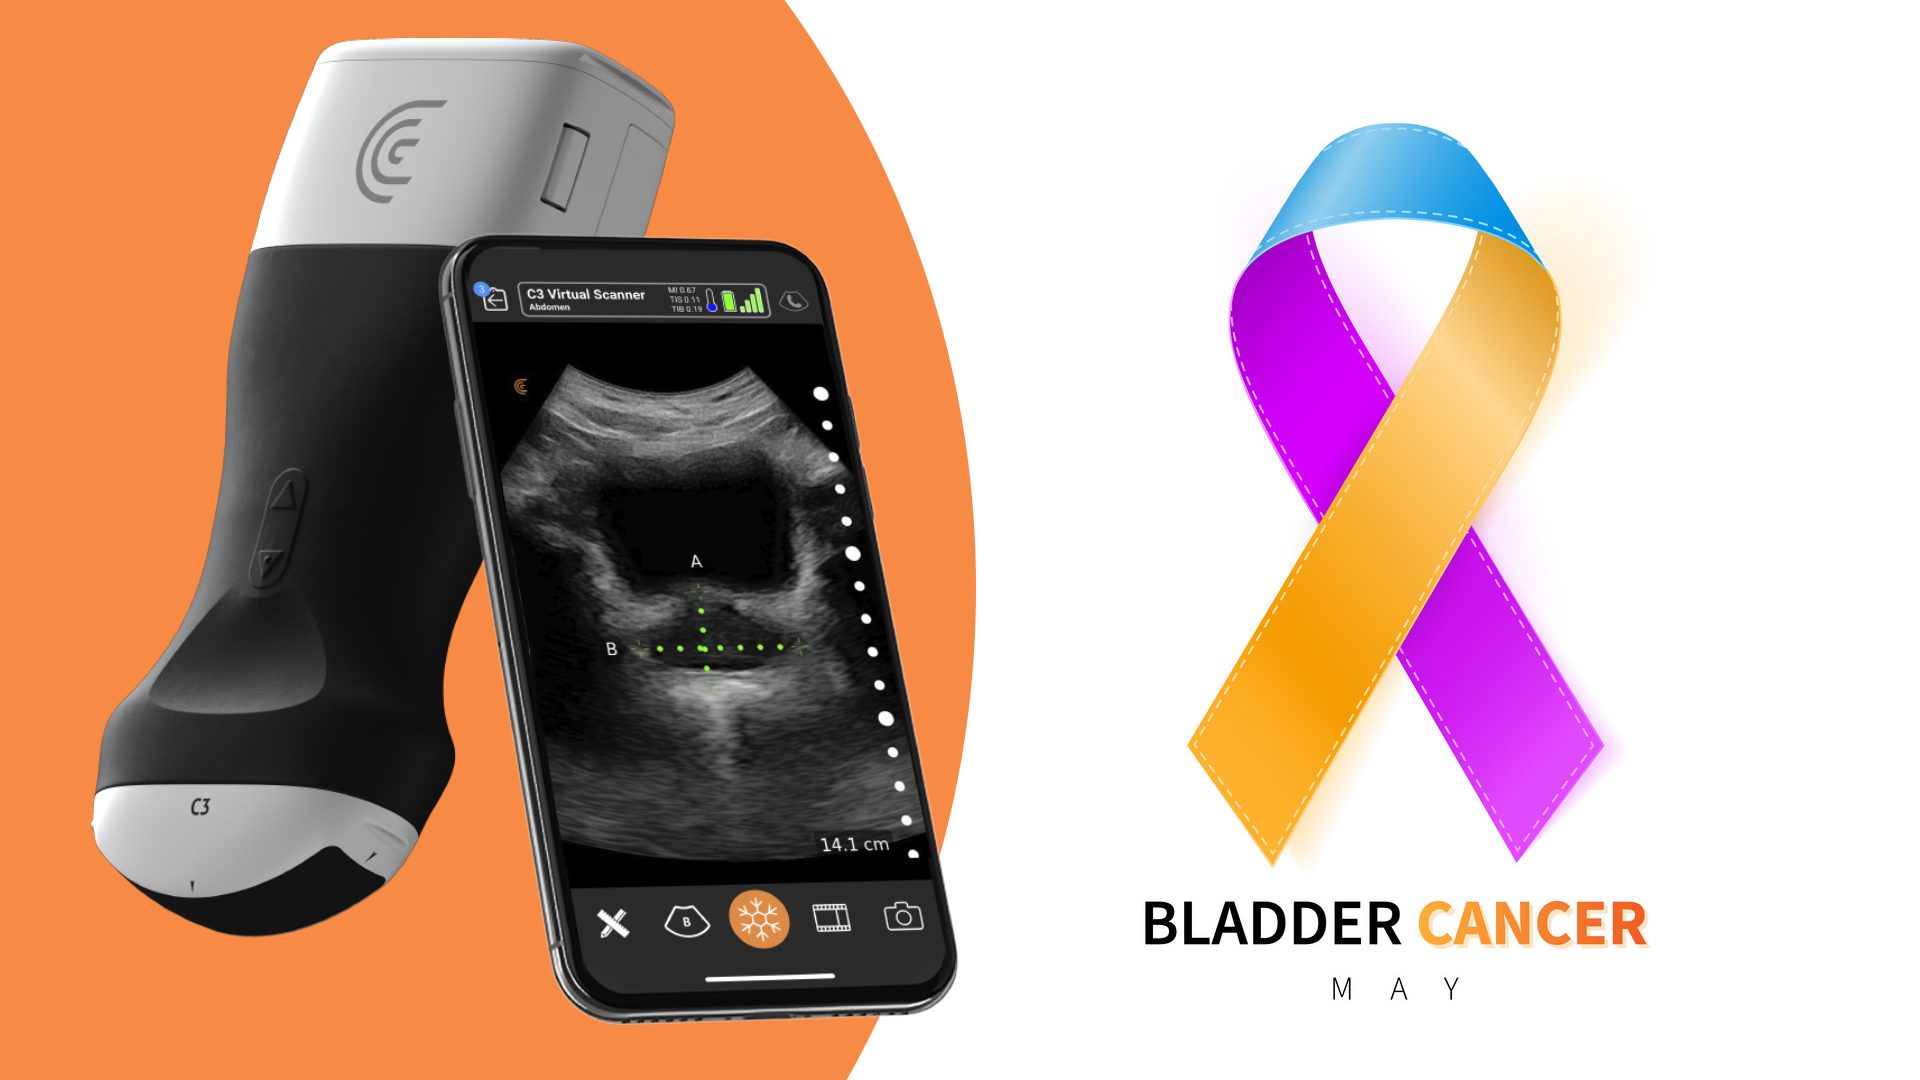 Ultrasound and Bladder Cancer